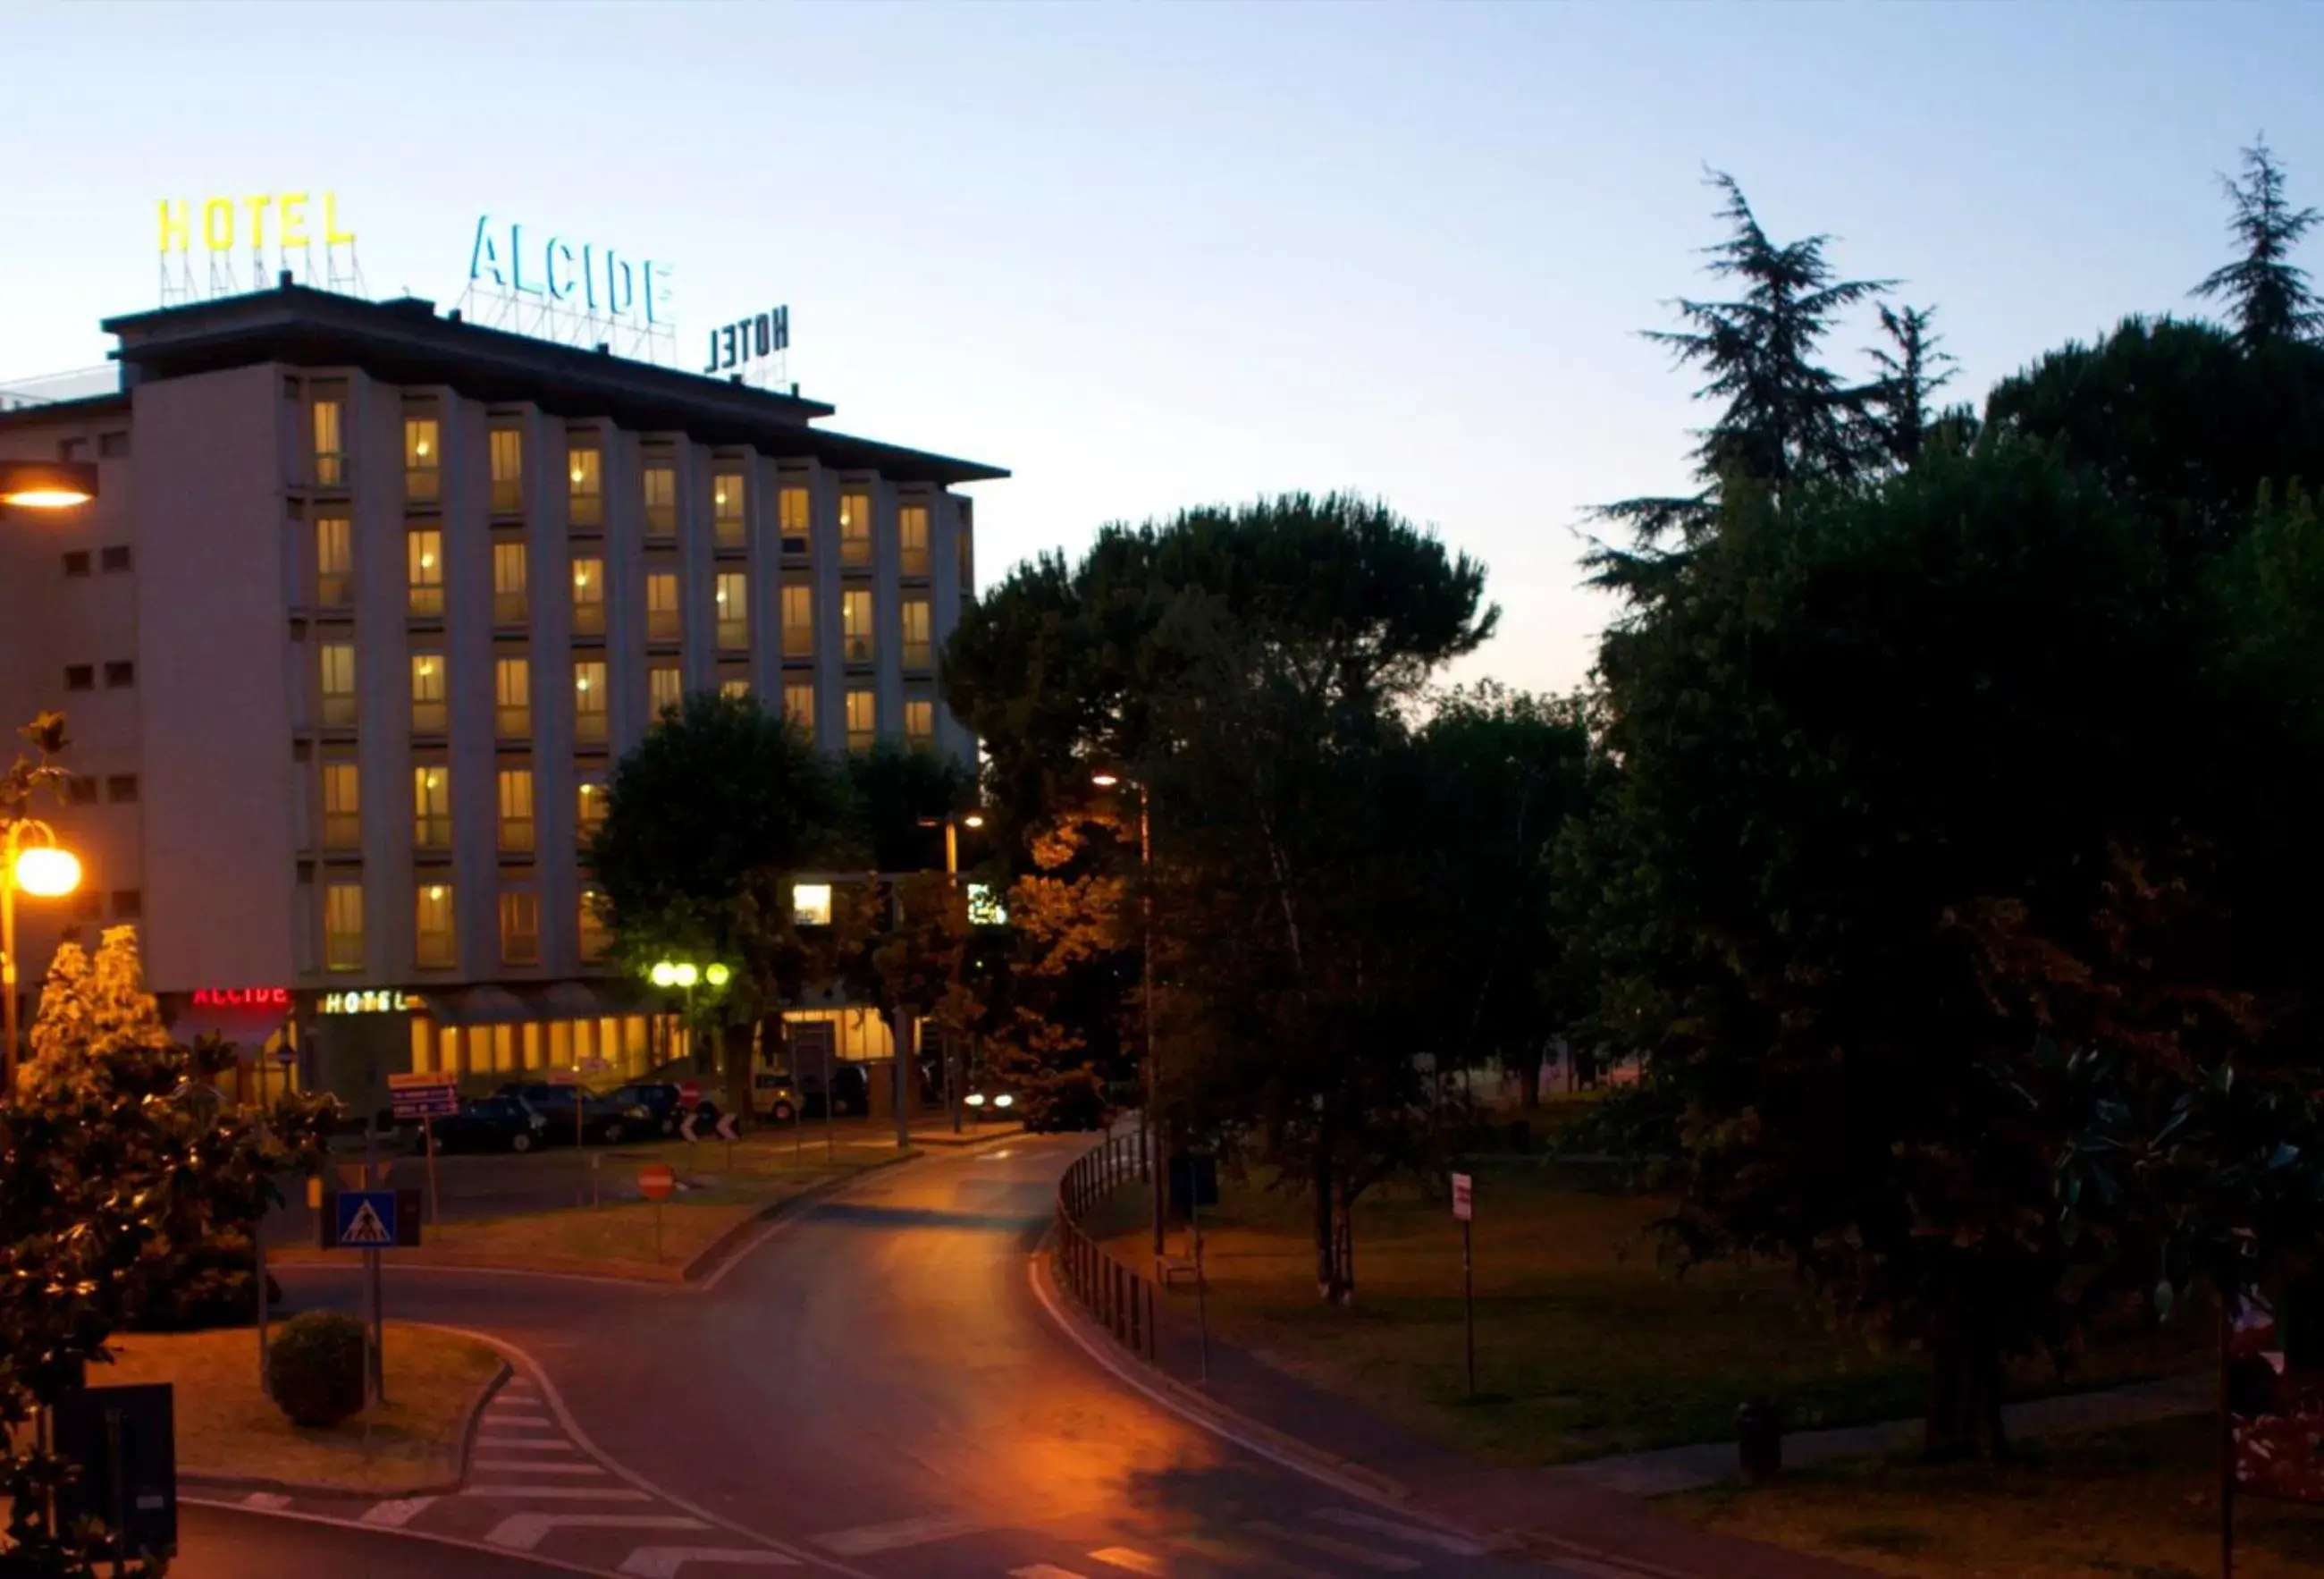 Facade/entrance in Hotel Ristorante Alcide